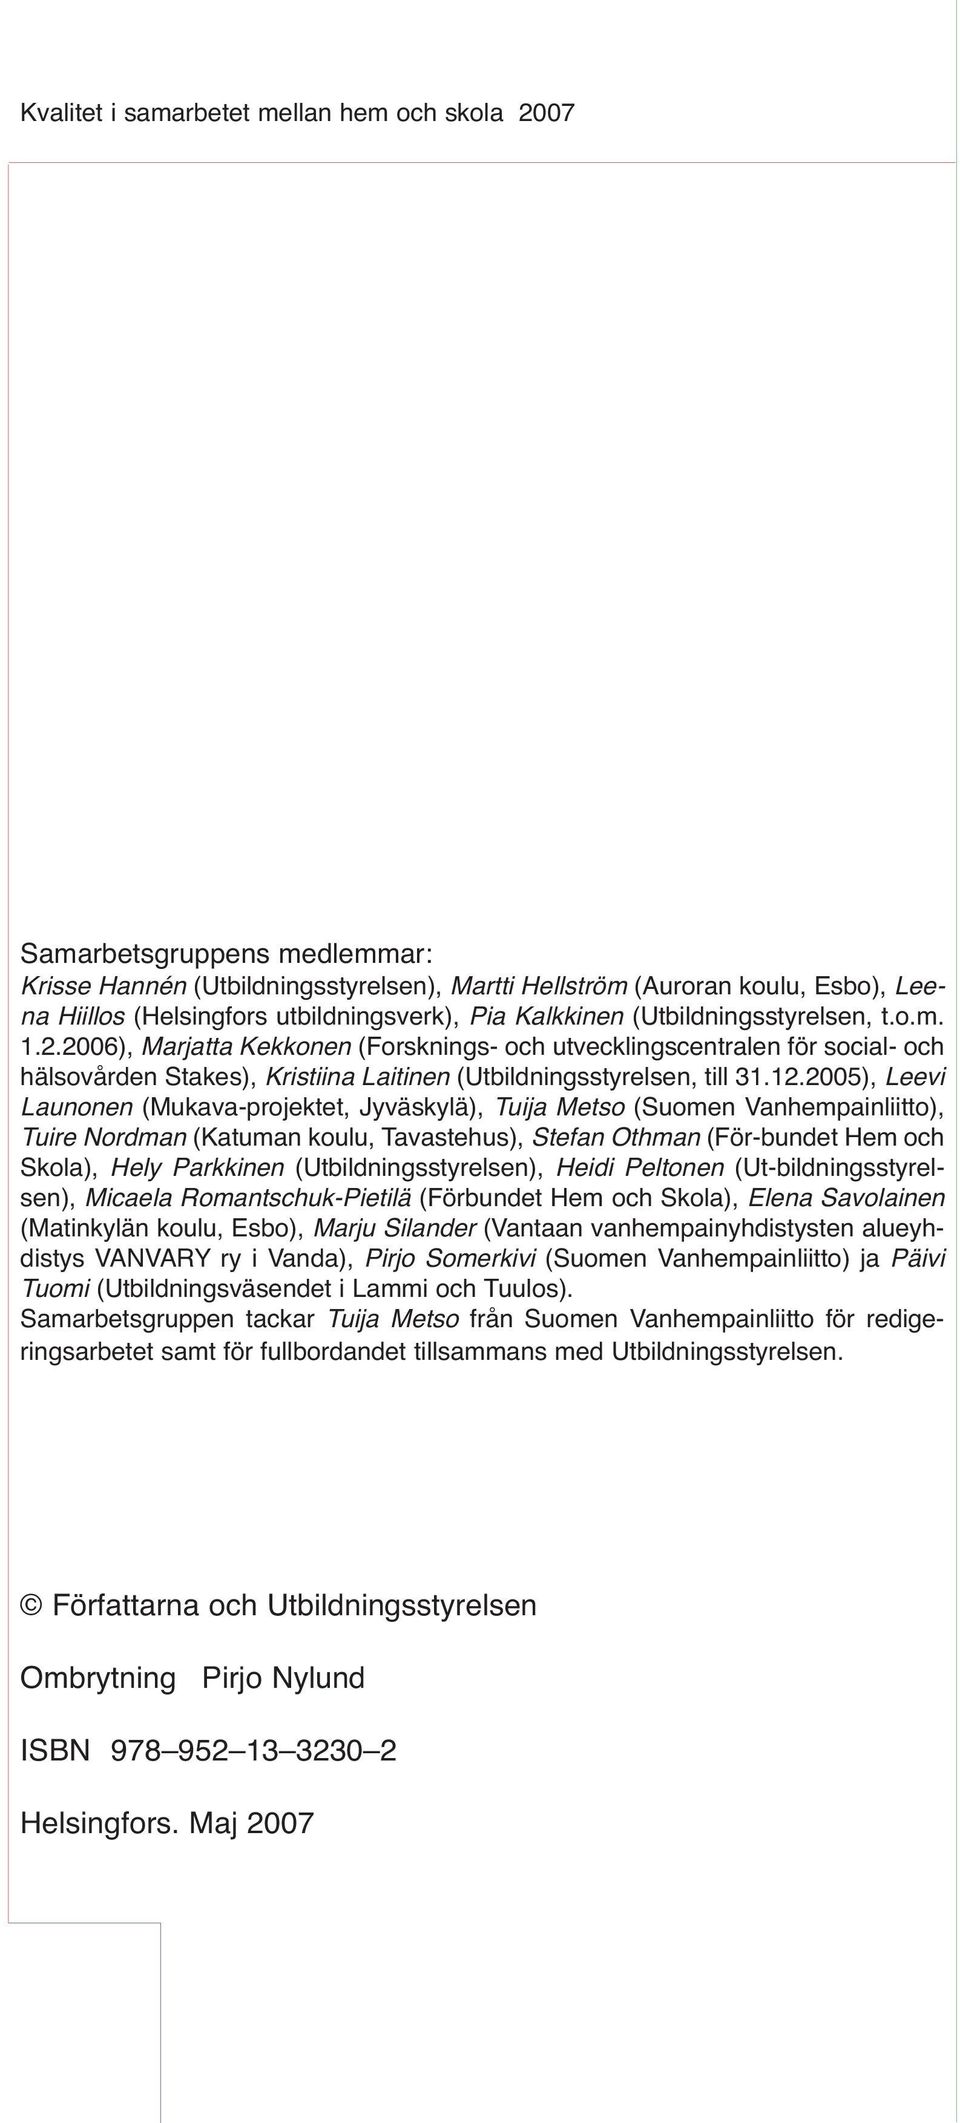 12.2005), Leevi Launonen (Mukava-projektet, Jyväskylä), Tuija Metso (Suomen Vanhempainliitto), Tuire Nordman (Katuman koulu, Tavastehus), Stefan Othman (För-bundet Hem och Skola), Hely Parkkinen